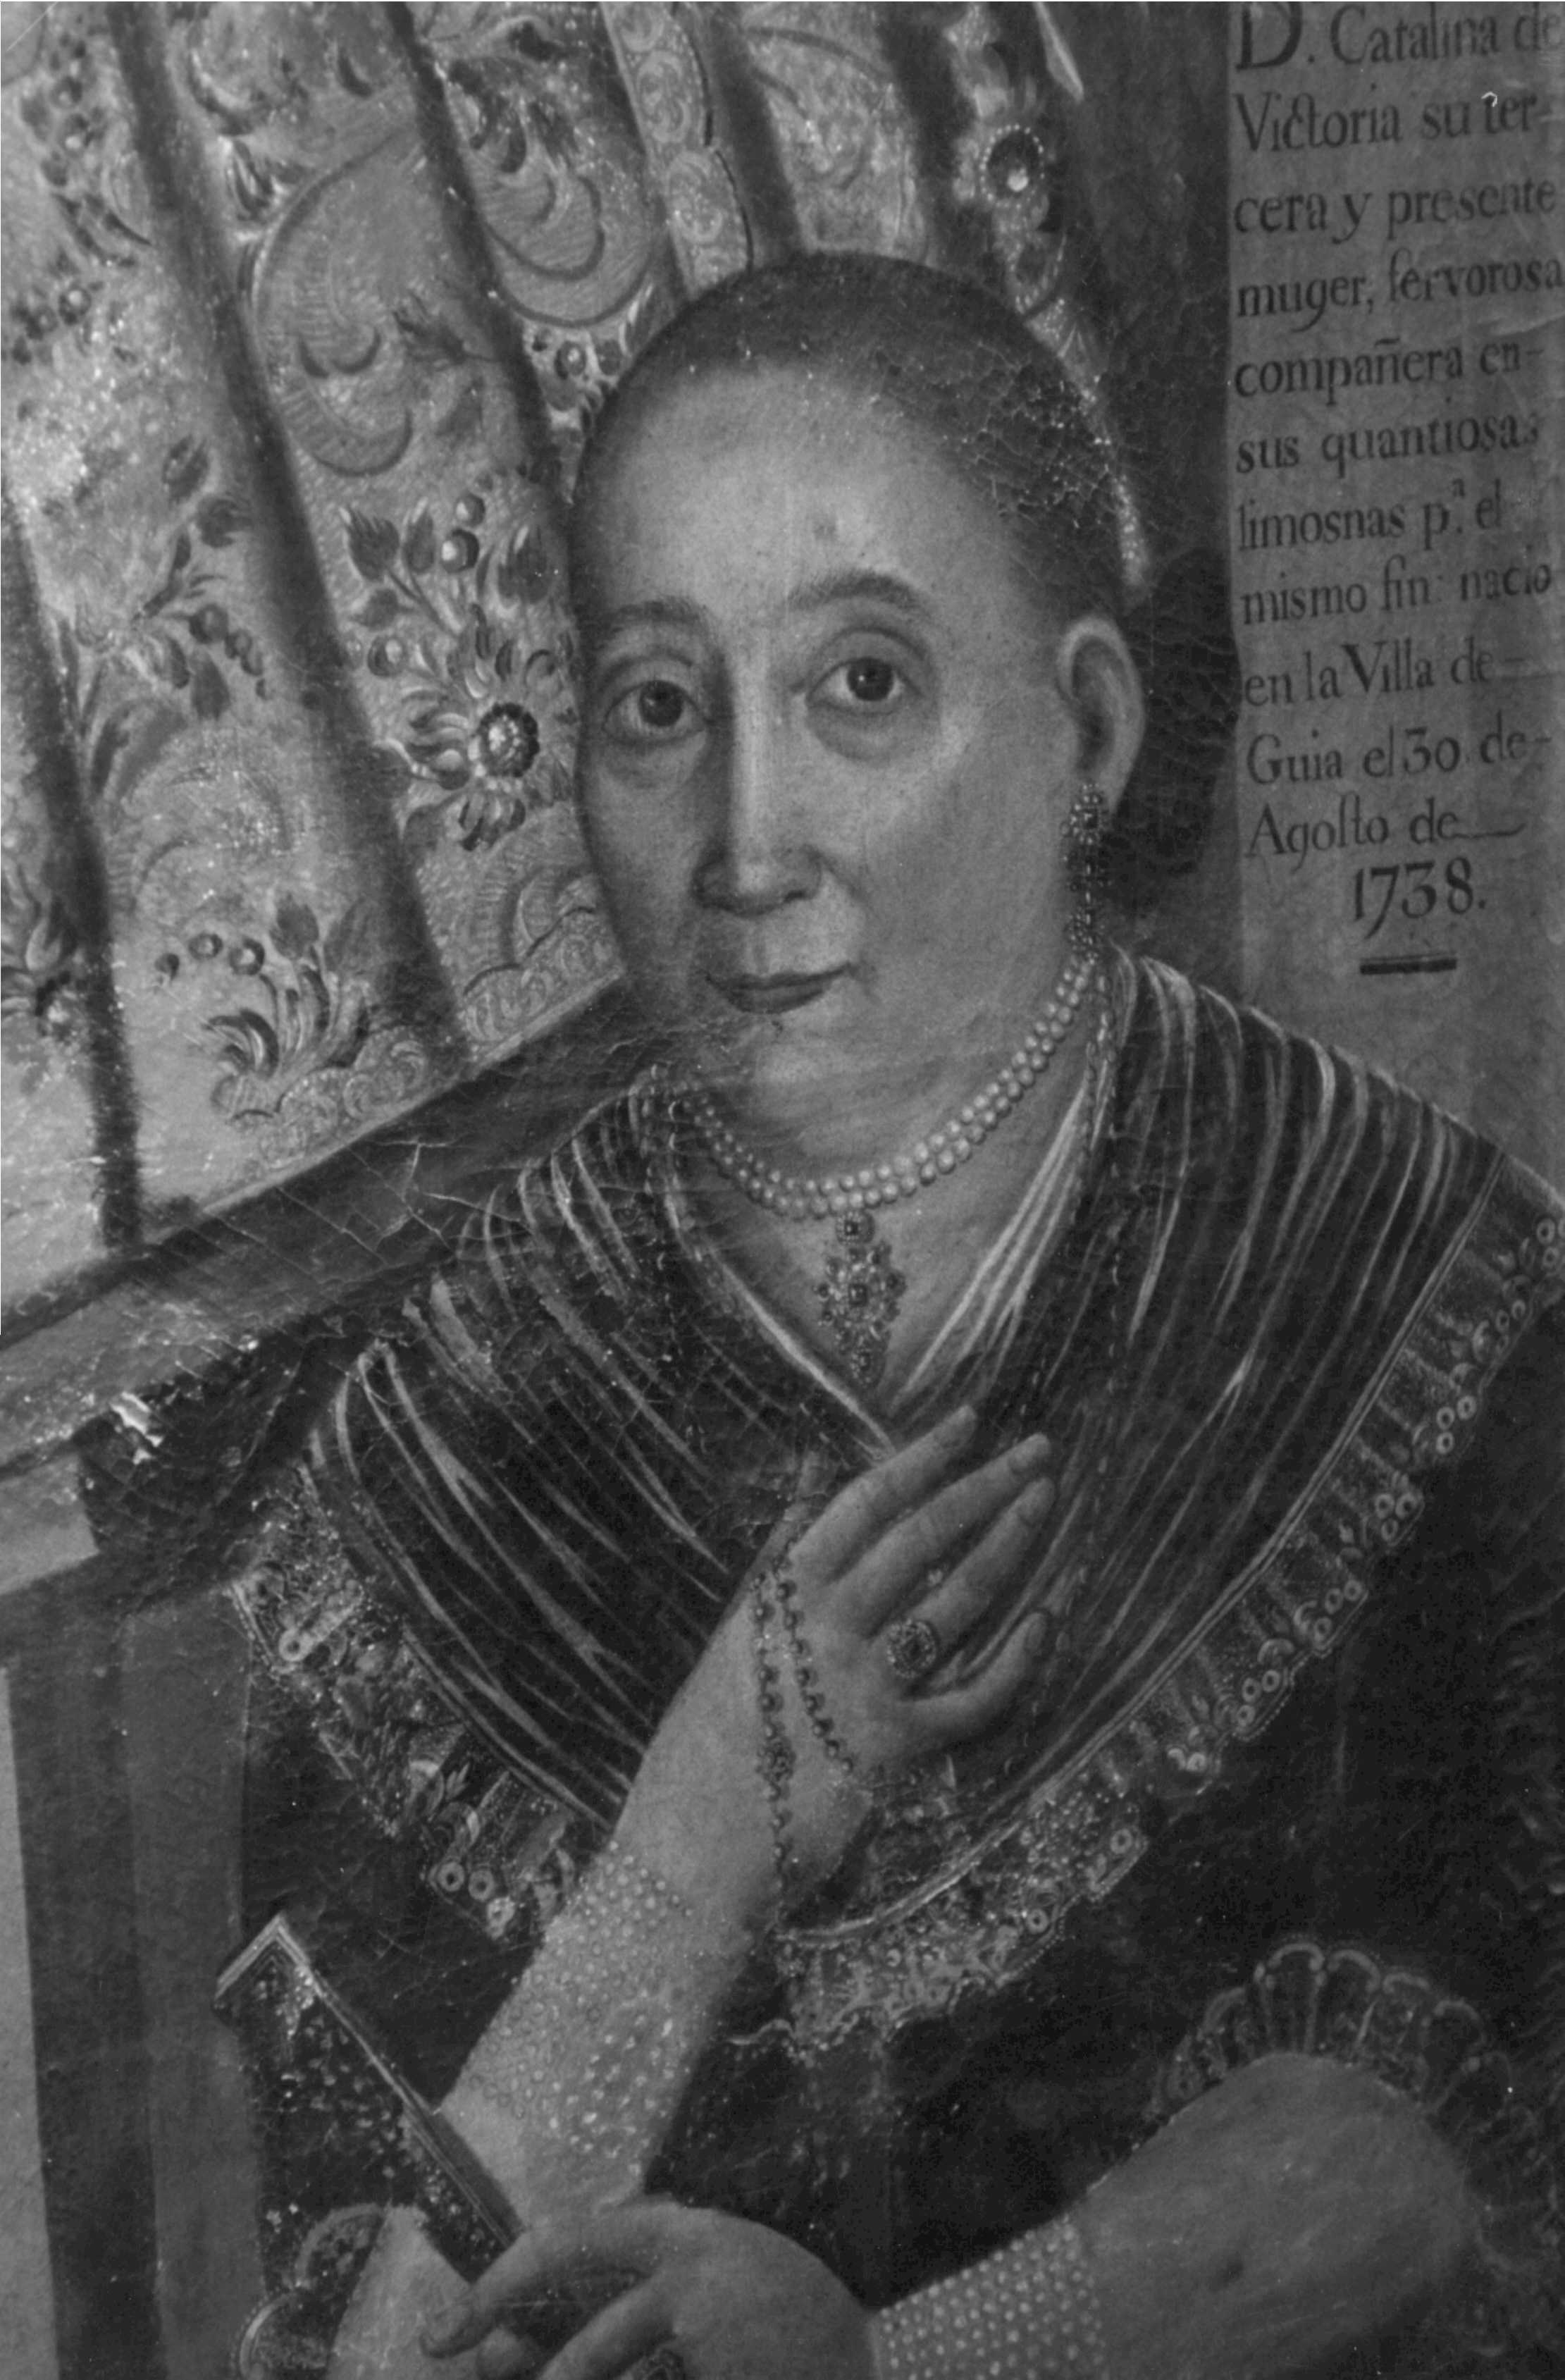 
Dña. Catalina Josefa de Victoria y Medina (1738-1807),
la dama Guiense que fuera la tercera esposa del Capitán Quesada.
     (Detalle del retrato conservado en la Capilla de San Miguel)
